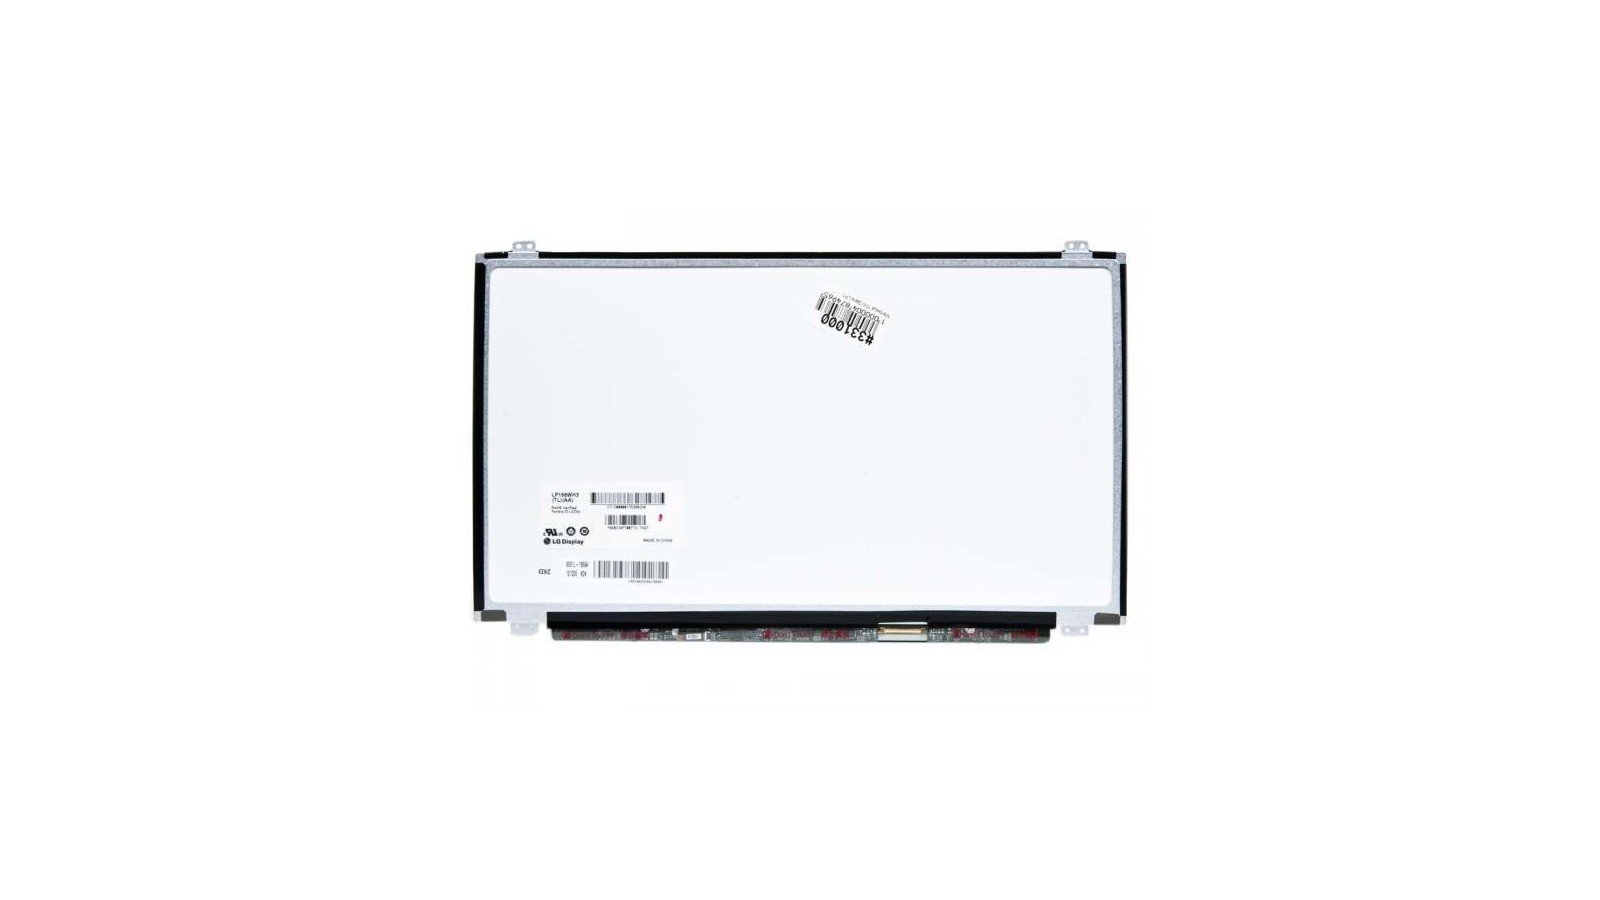 Display LCD Schermo 15,6 compatibile con ACER ASPIRE E5-573G connettore 30 pin